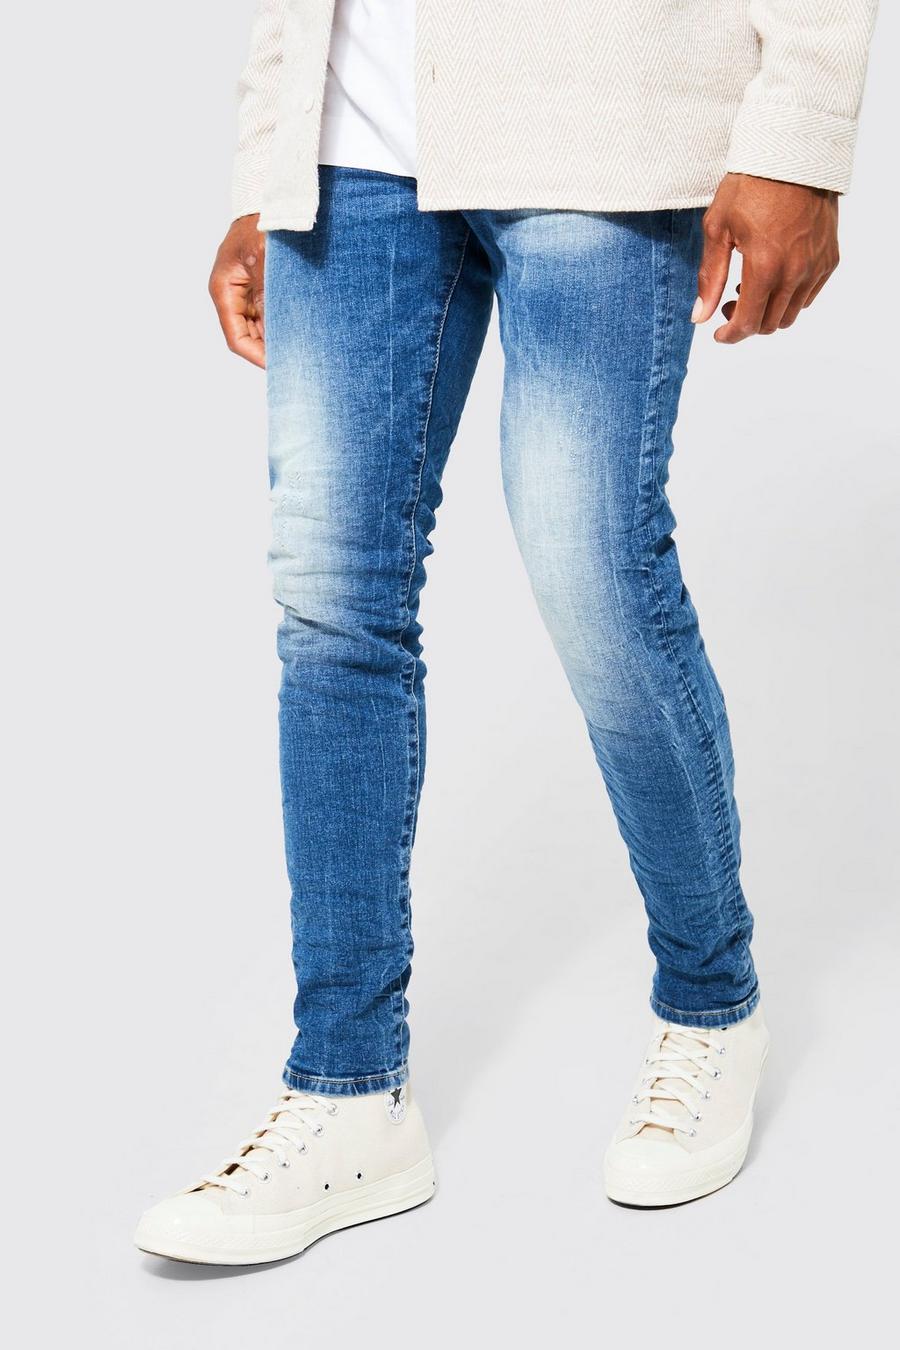 כחול ביניים azul ג'ינס סקיני נמתח עם אפקט קמטים